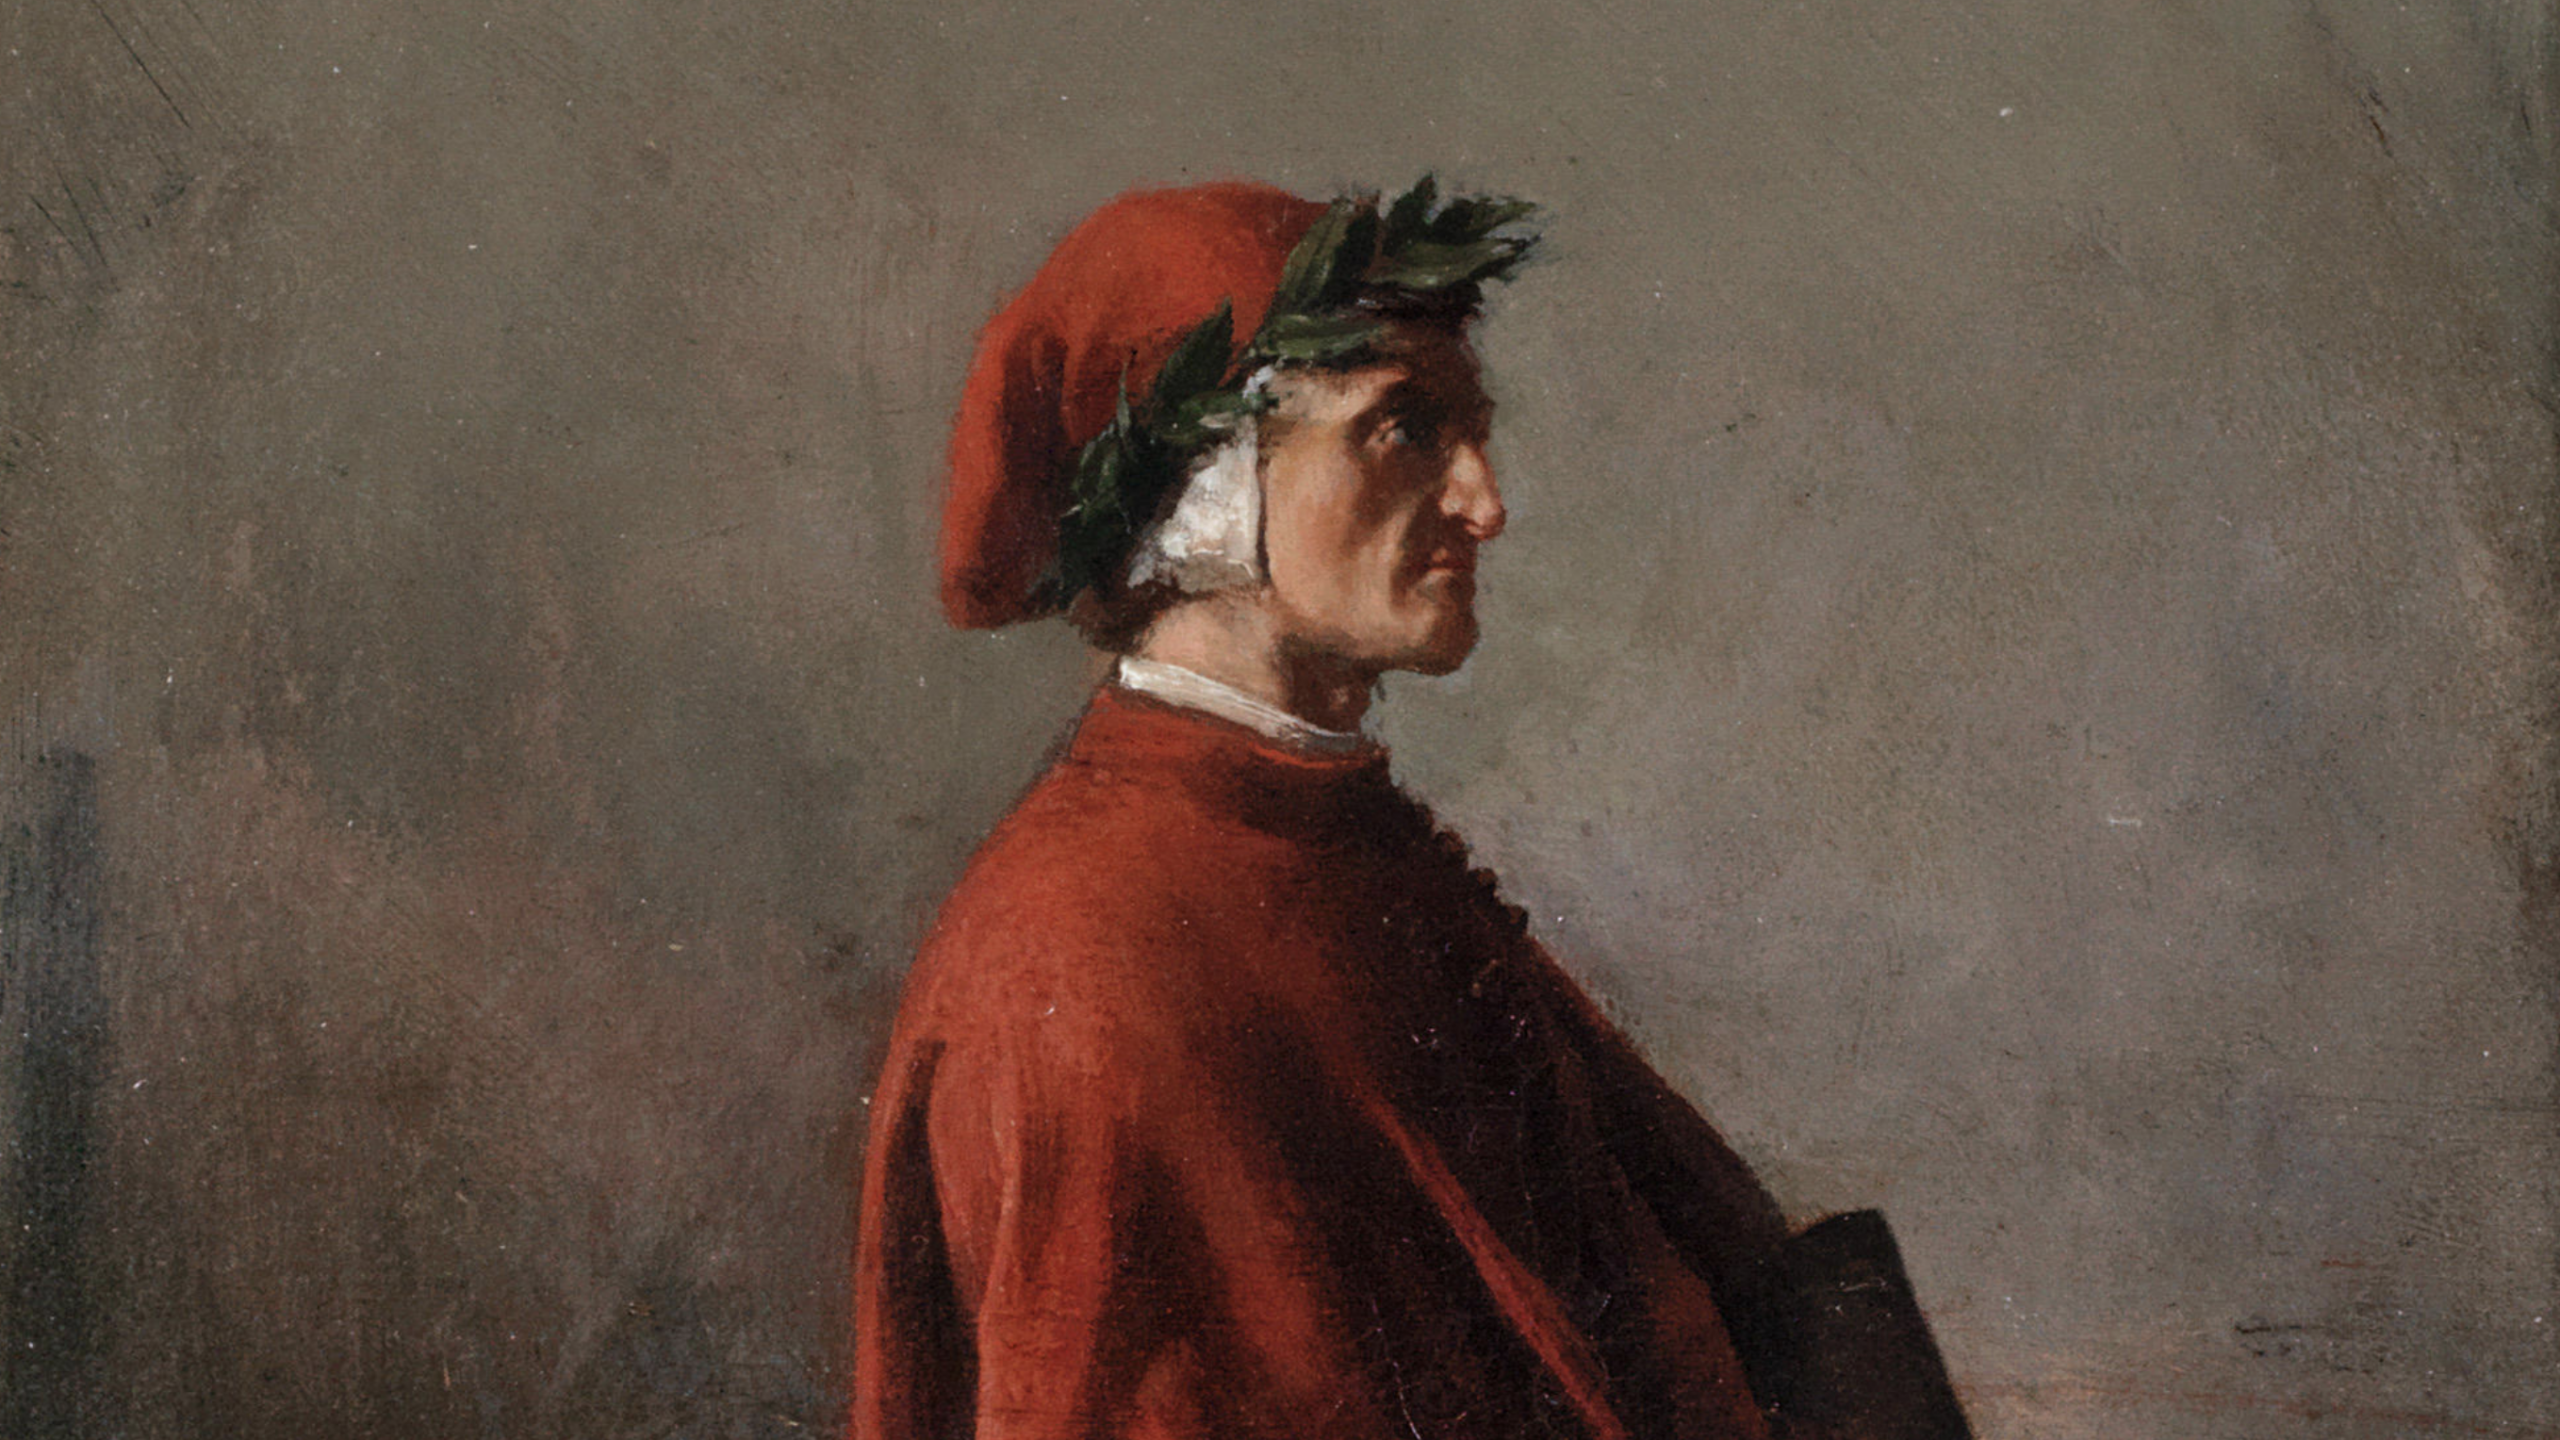 Dante in profile